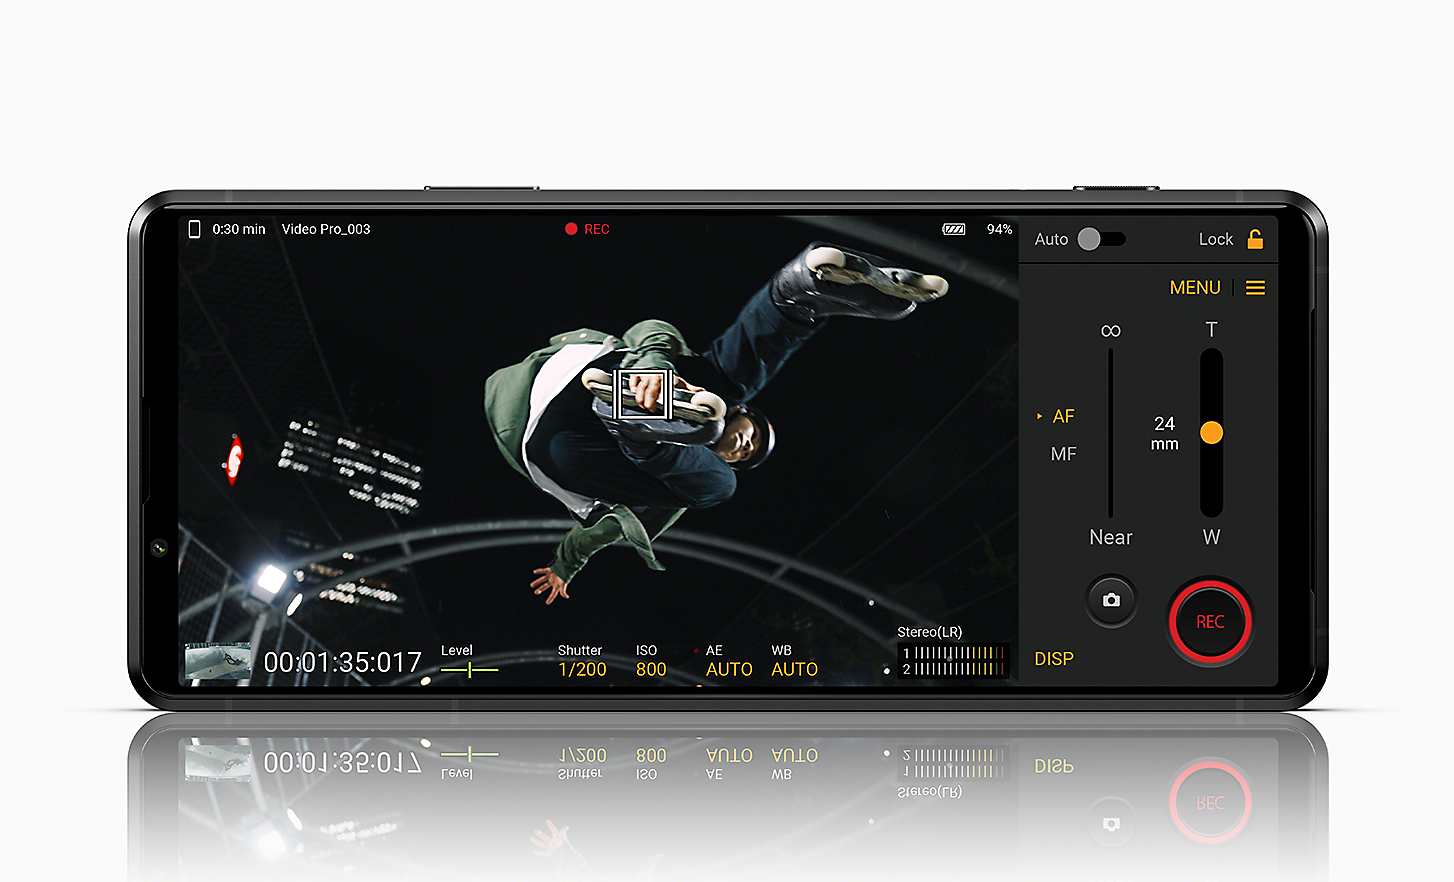 Xperia PRO-I viser bilde av rulleskøyteløper og Videography Pro-brukergrensesnitt